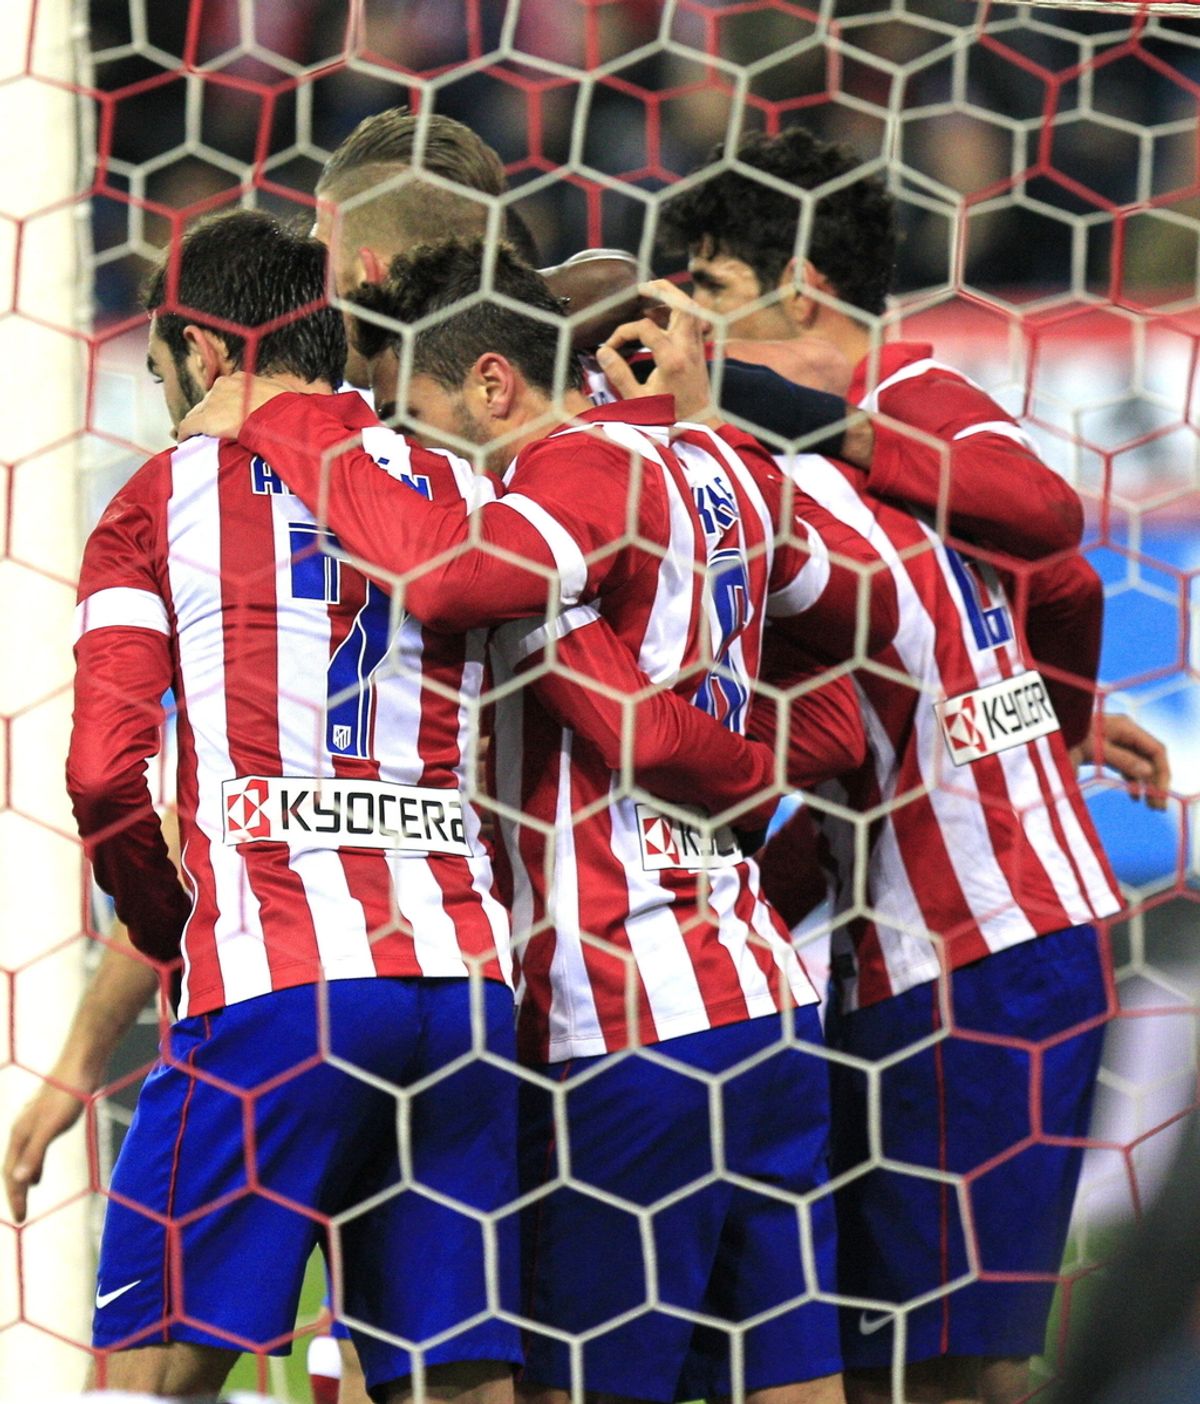 Los jugadores del Atlético de Madrid celebran el gol marcado por su compañero el uruguayo Diego Roberto Godín